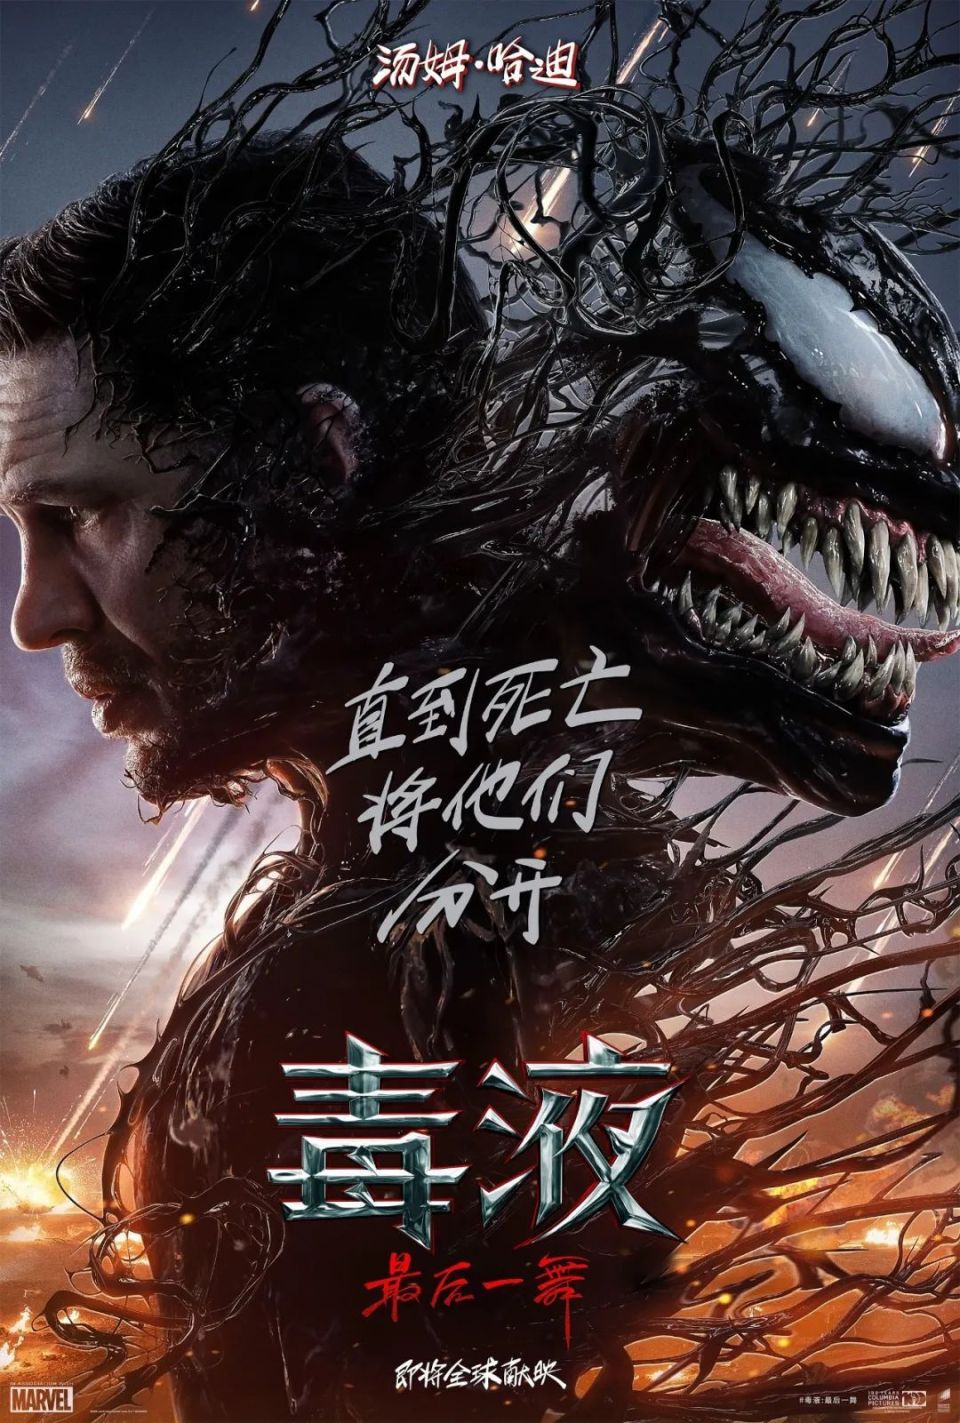 《毒液3》正式预告片来了!中文版海报出炉,有望引进!